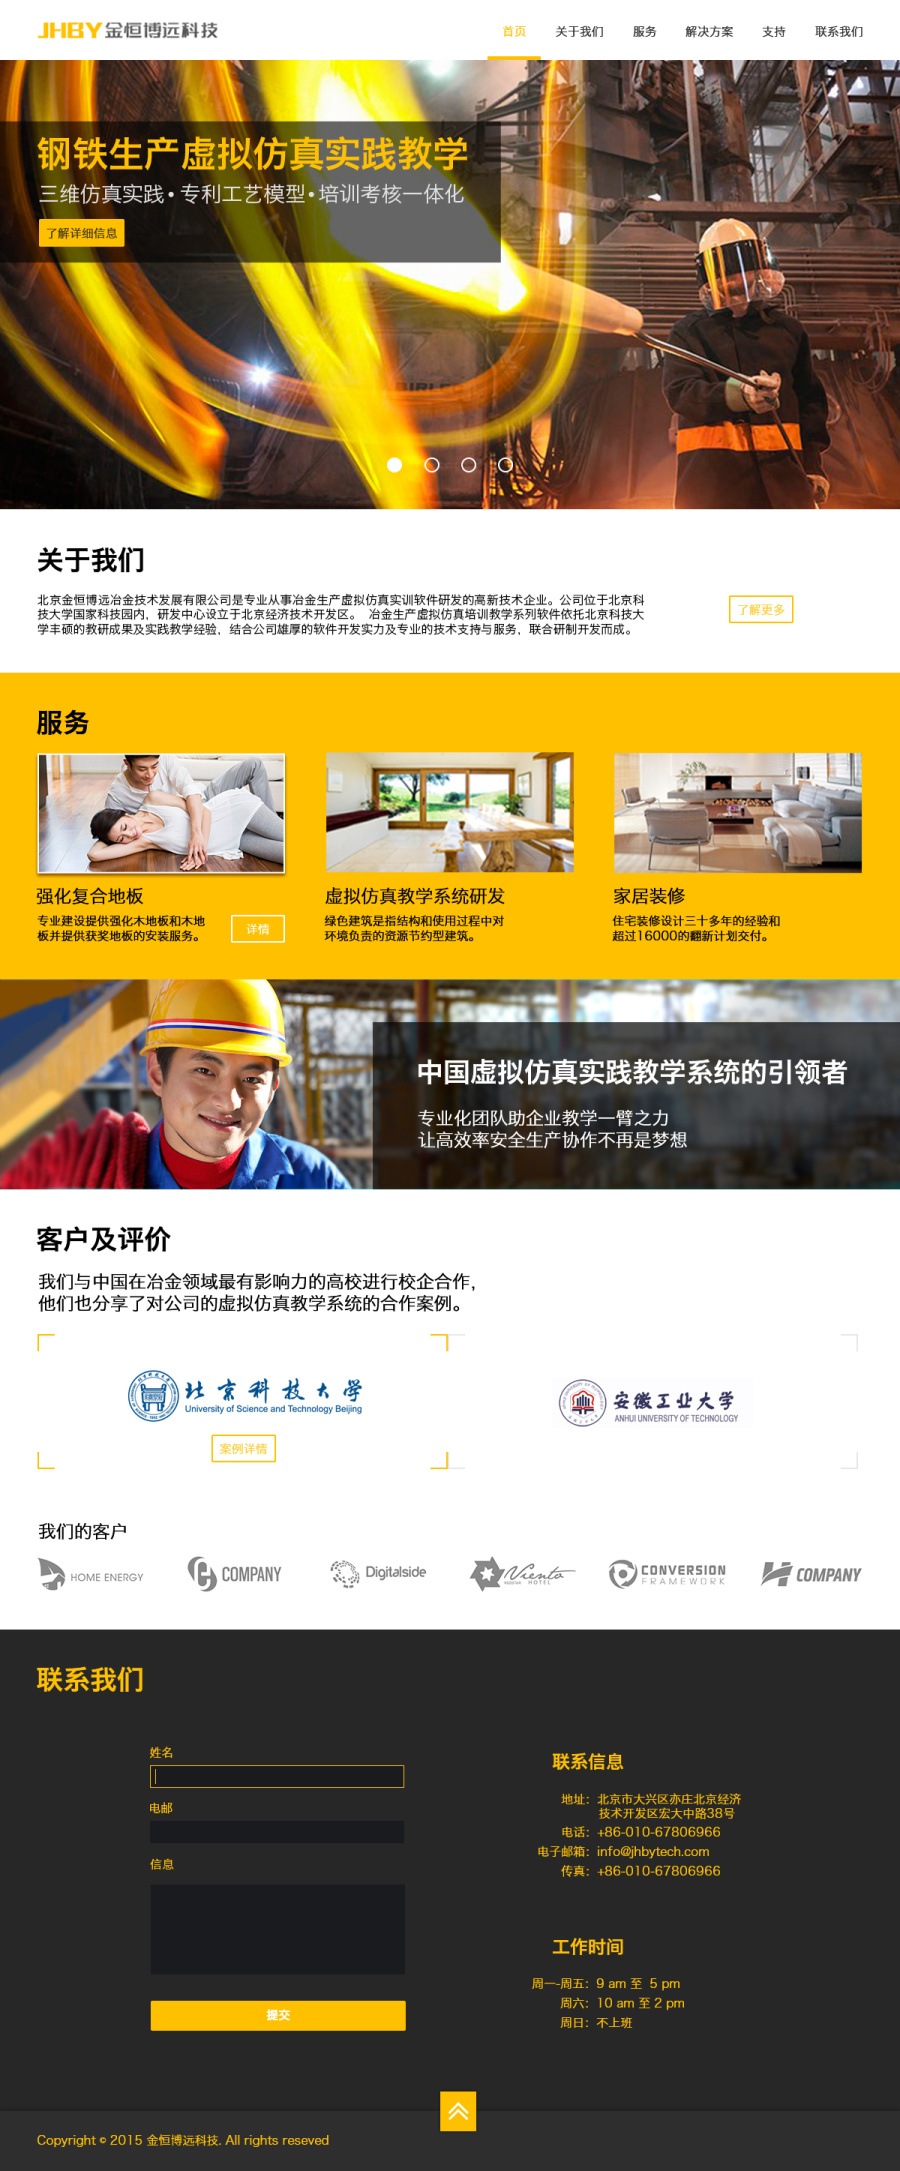 金恒博远科技公司企业官网设计|企业官网|网页